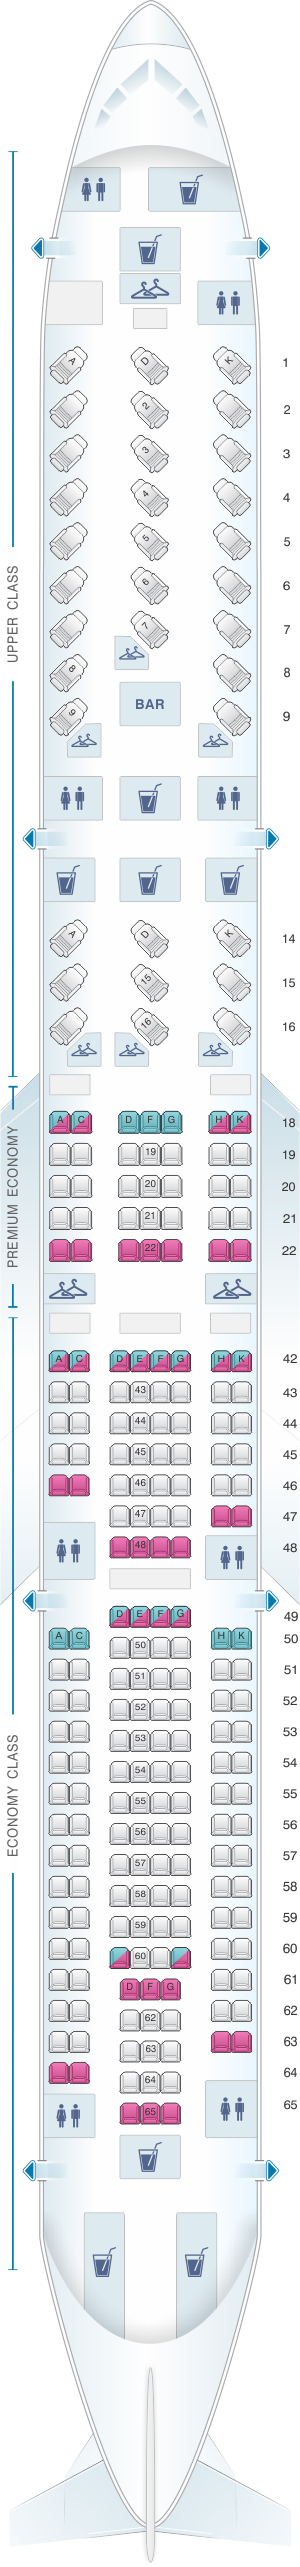 Seat map for Virgin Atlantic Airbus A340 300